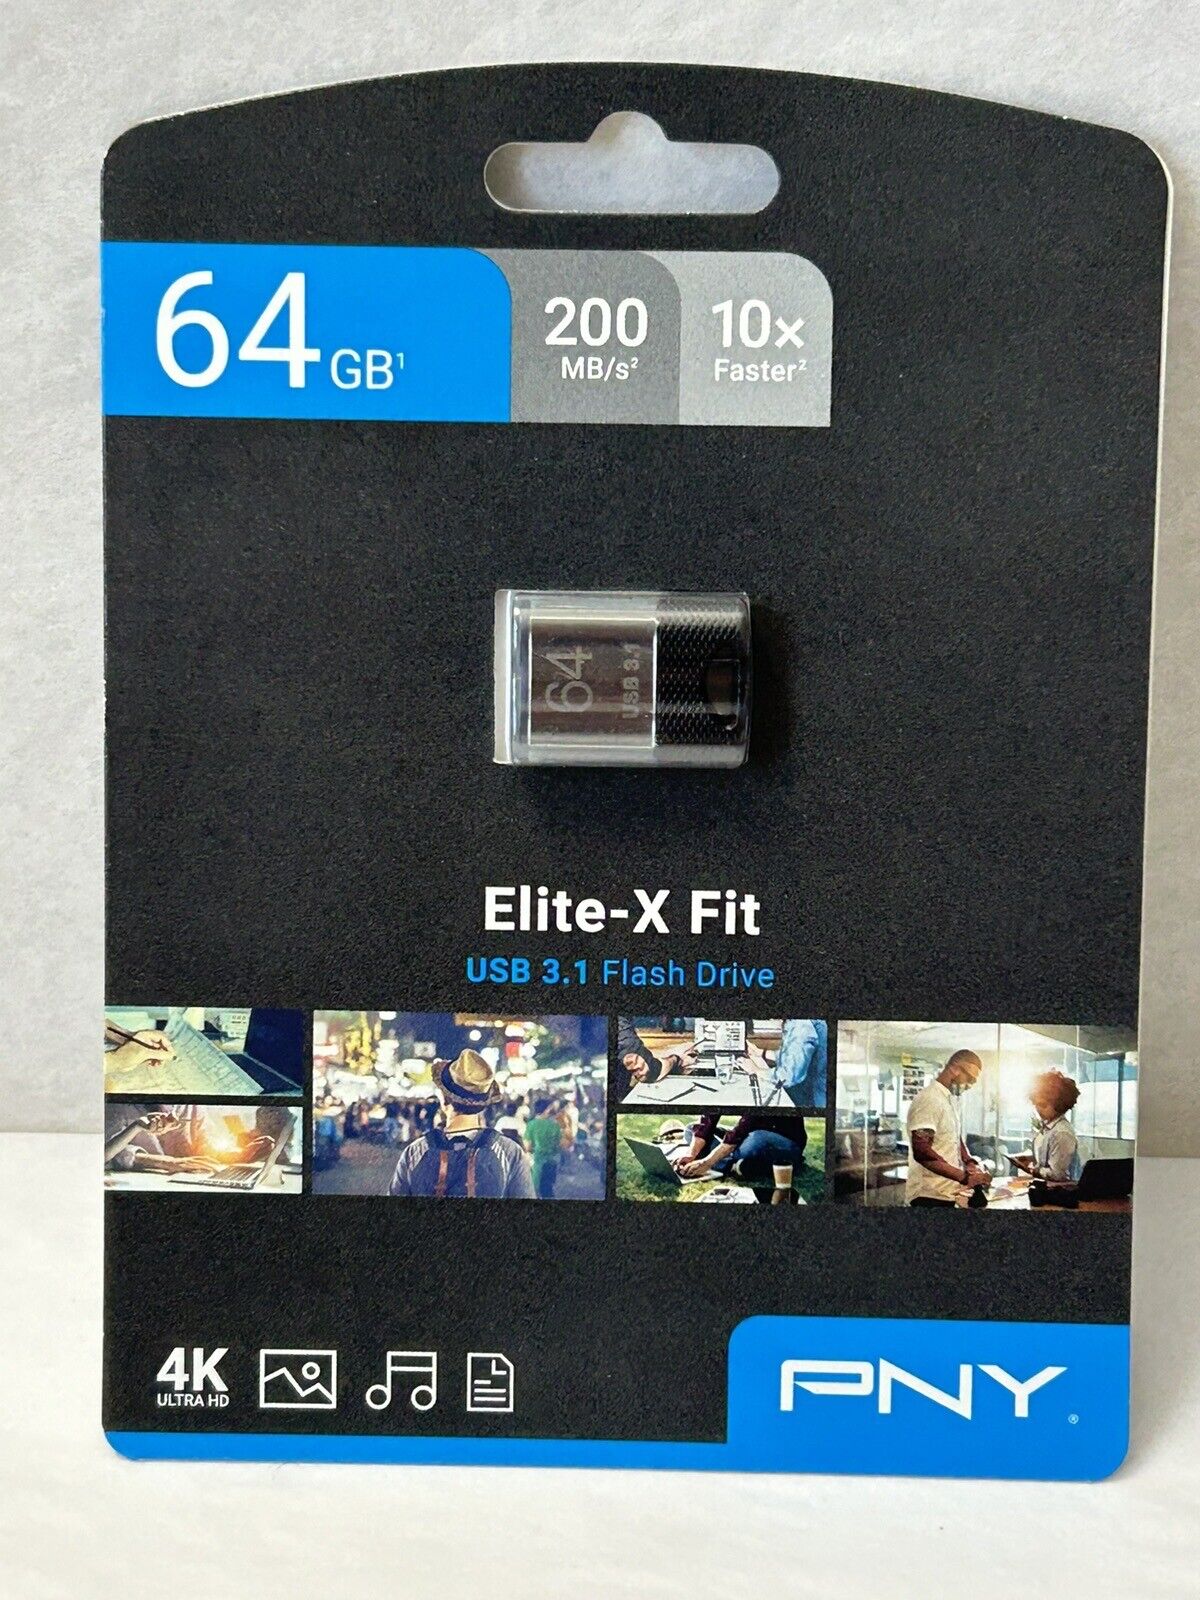 New PNY 64GB Elite-X Fit USB 3.1 Flash Drive 4K 200MB/s 10X Faster Sealed